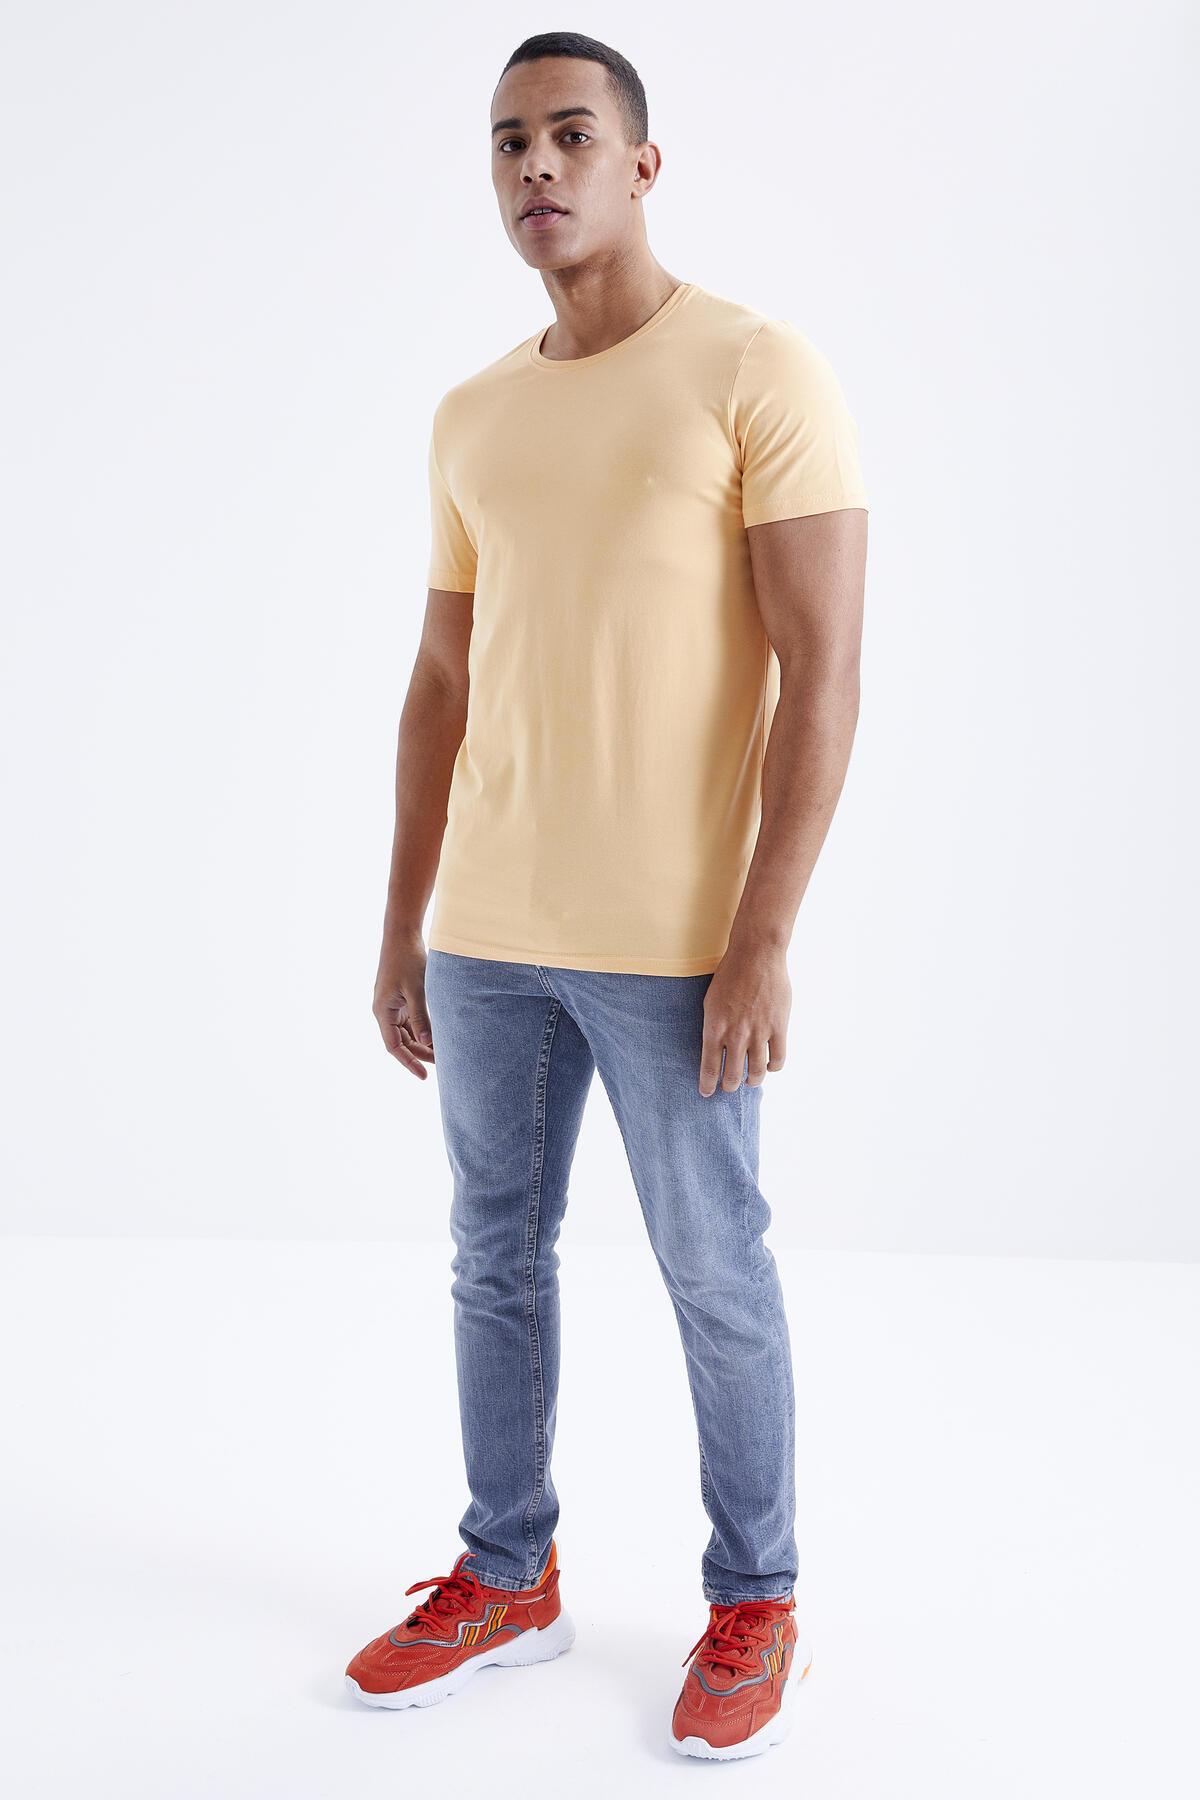 Men's Basic Short Sleeve Standard Mold O Neck T-shirt - 87911